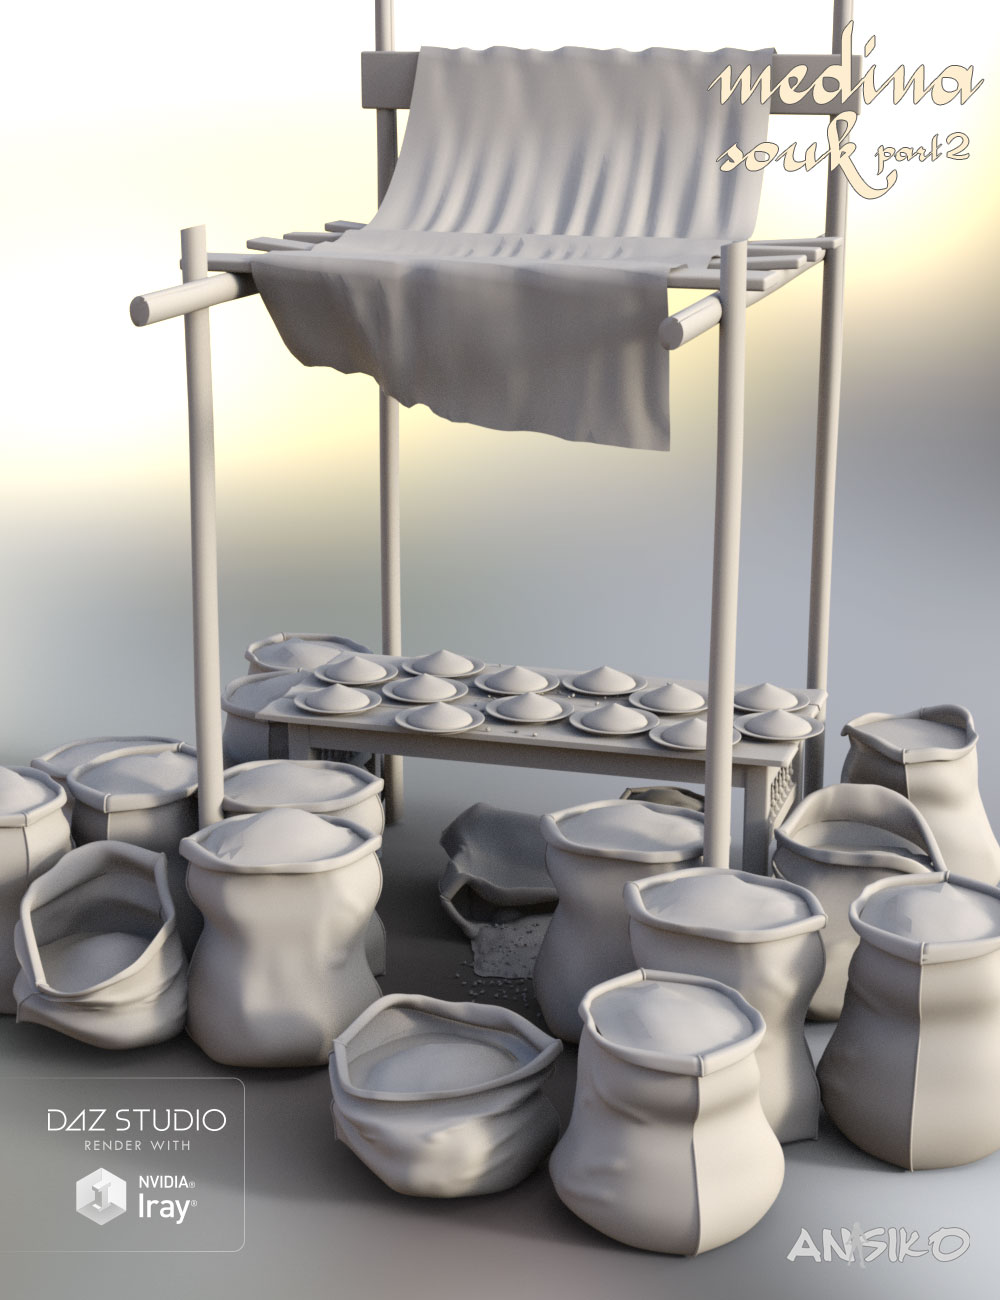 Medina Souk 1 by: Ansiko, 3D Models by Daz 3D